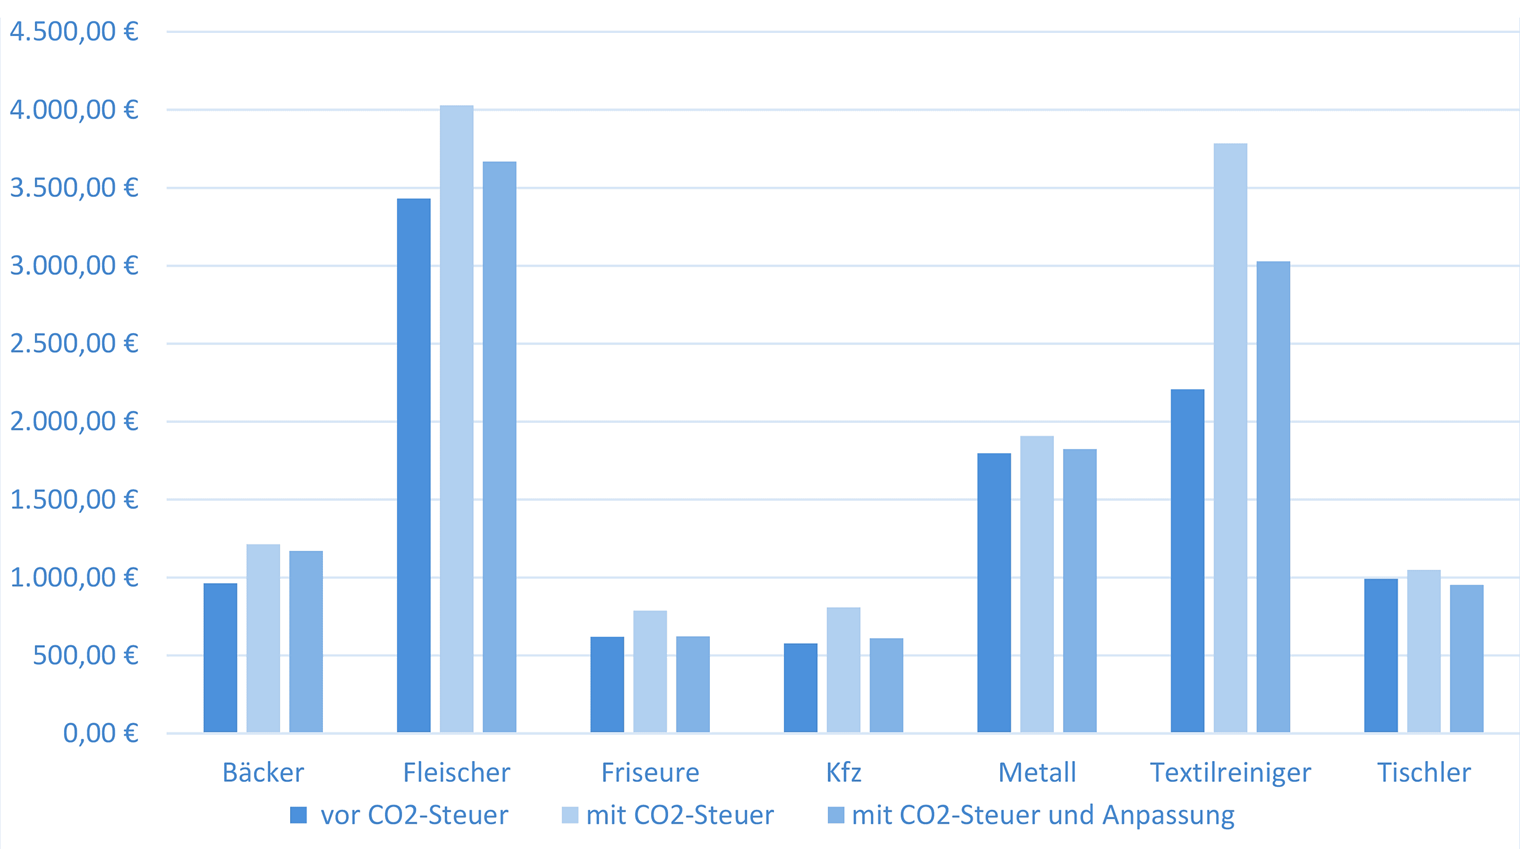 Energiekosten pro Mitarbeiter und Jahr (in Euro, vor und nach Einführung der CO2-Bepreisung)